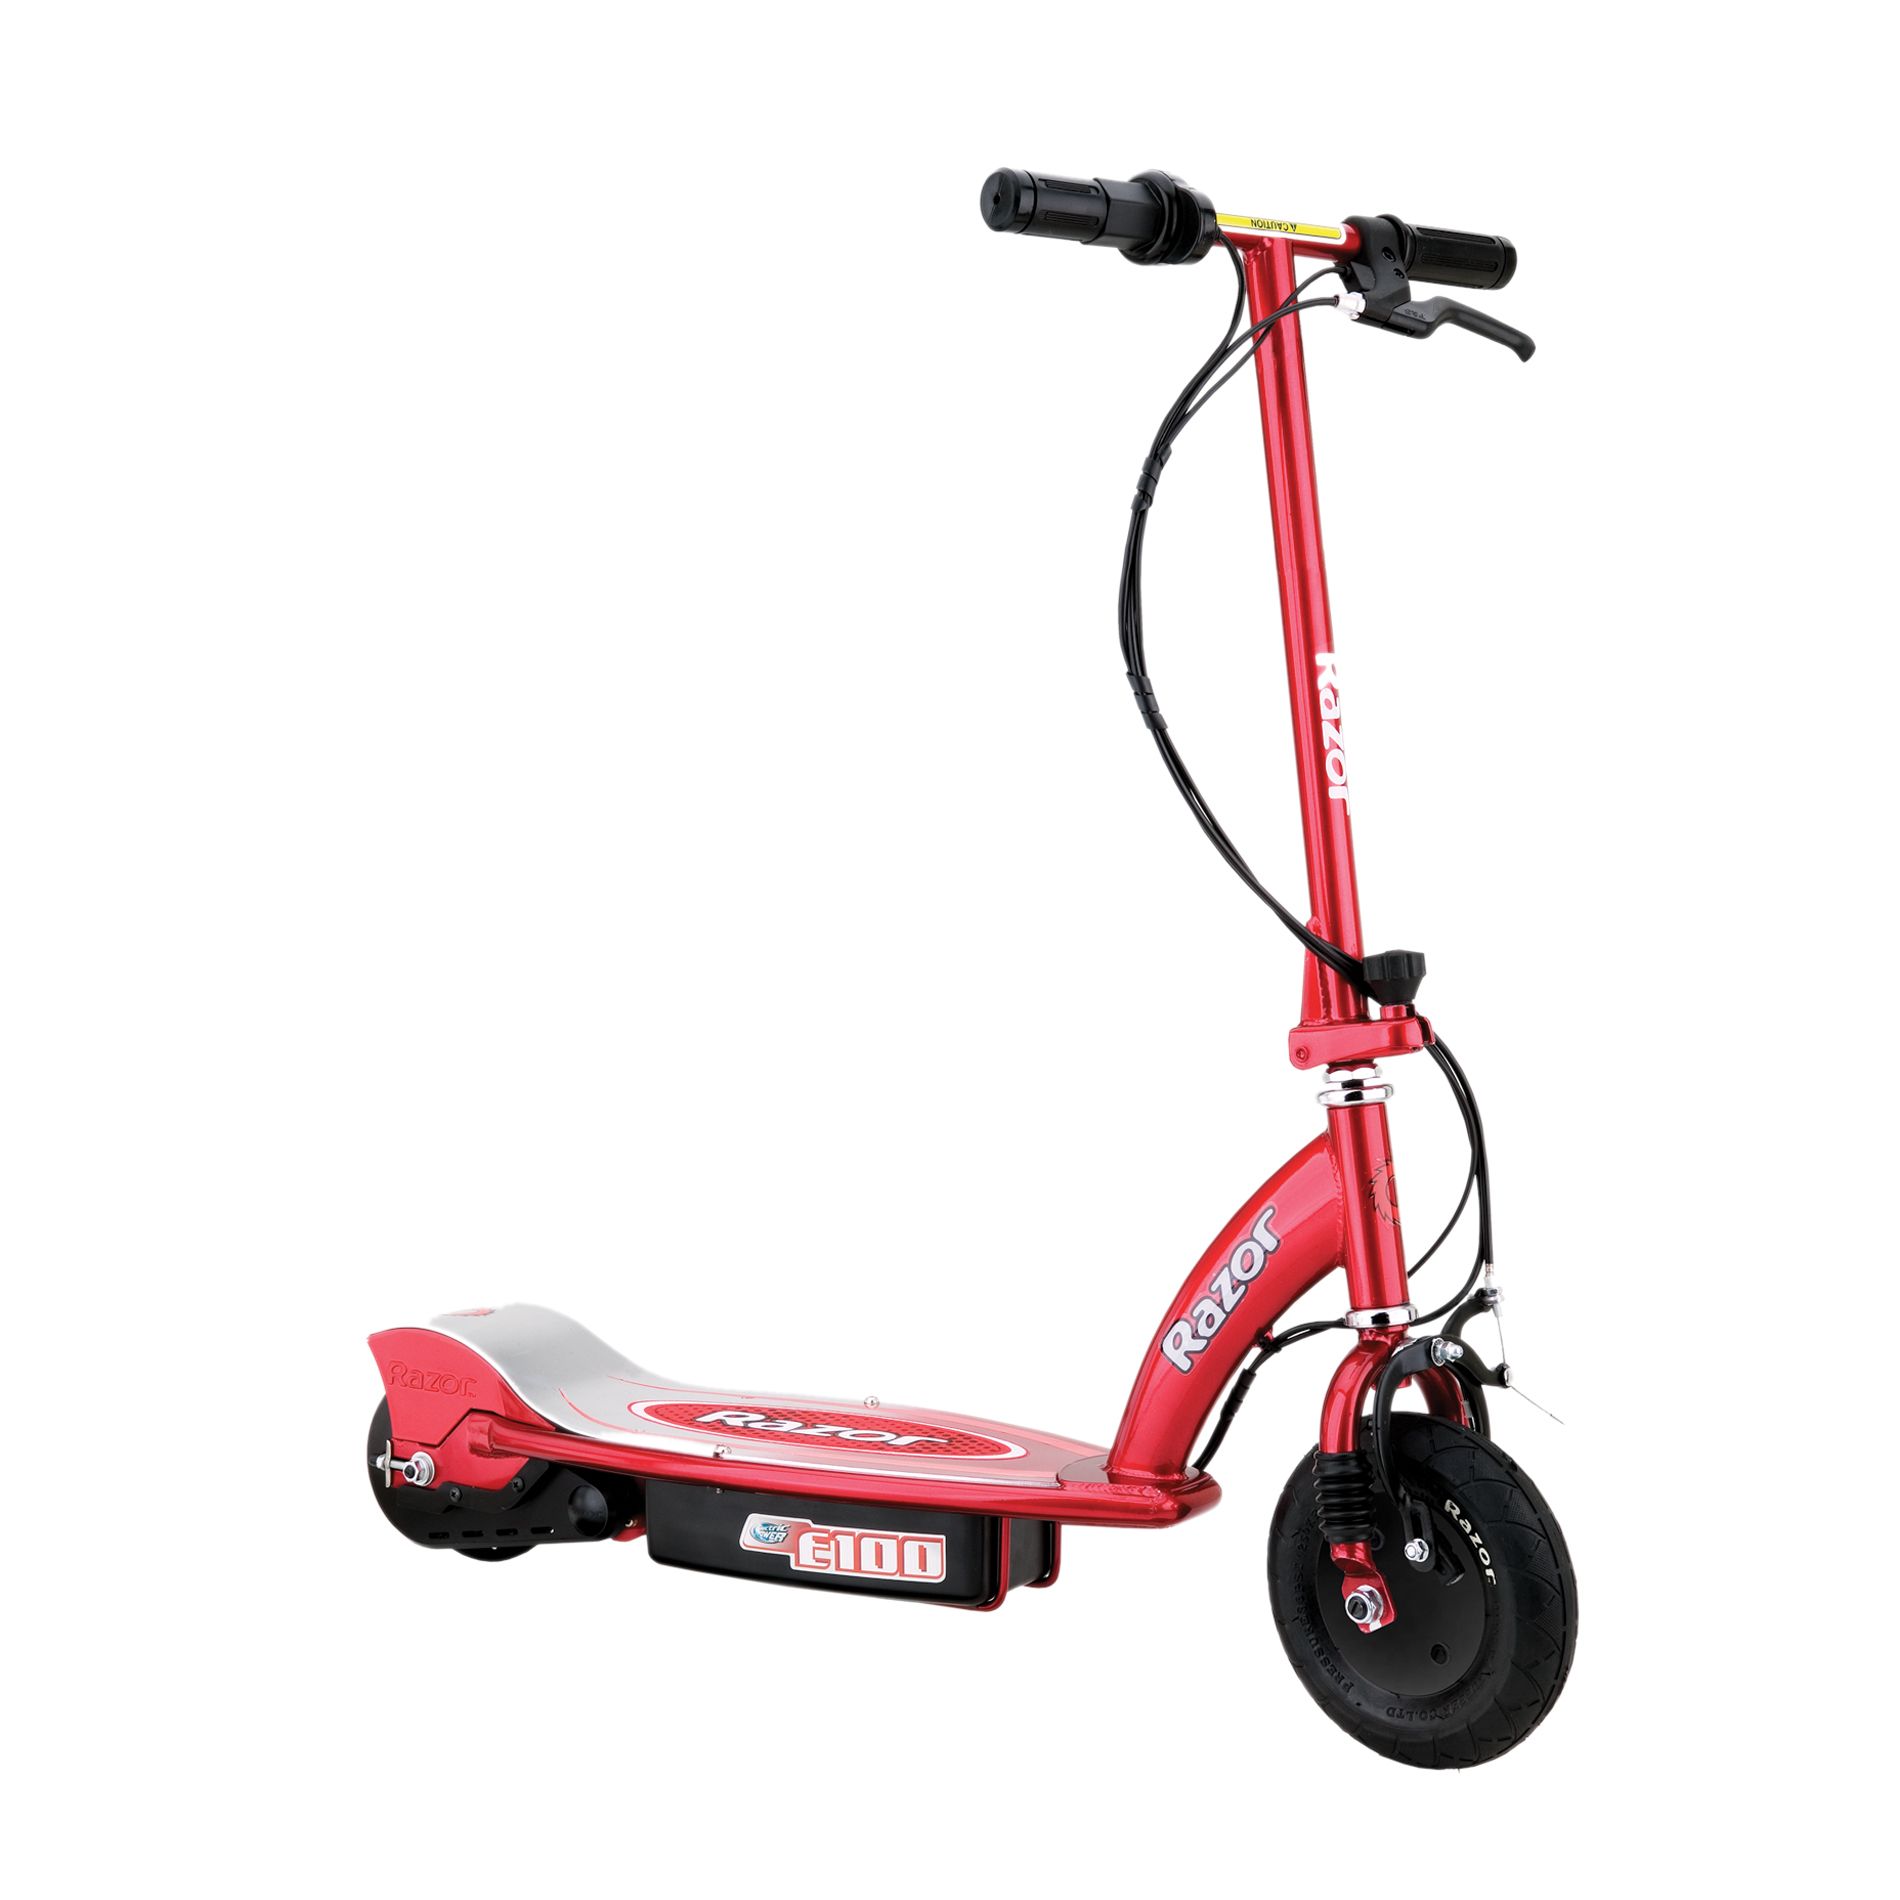 2 wheel scooter kmart